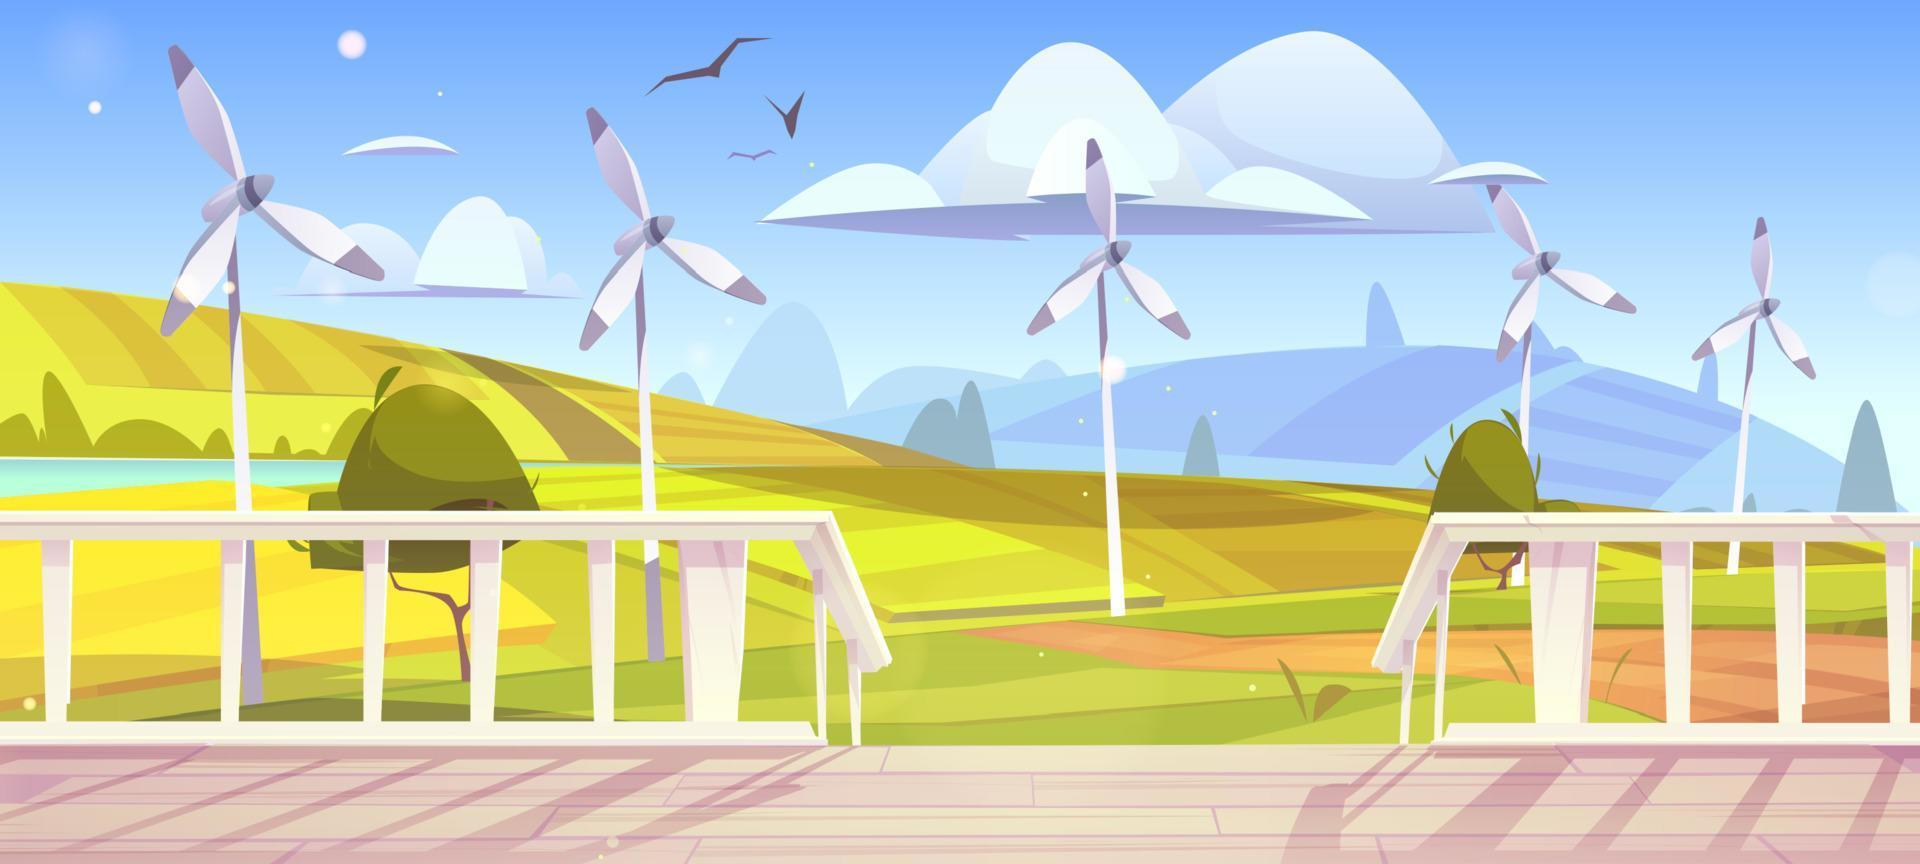 paisagem rural com turbinas eólicas e varanda vetor